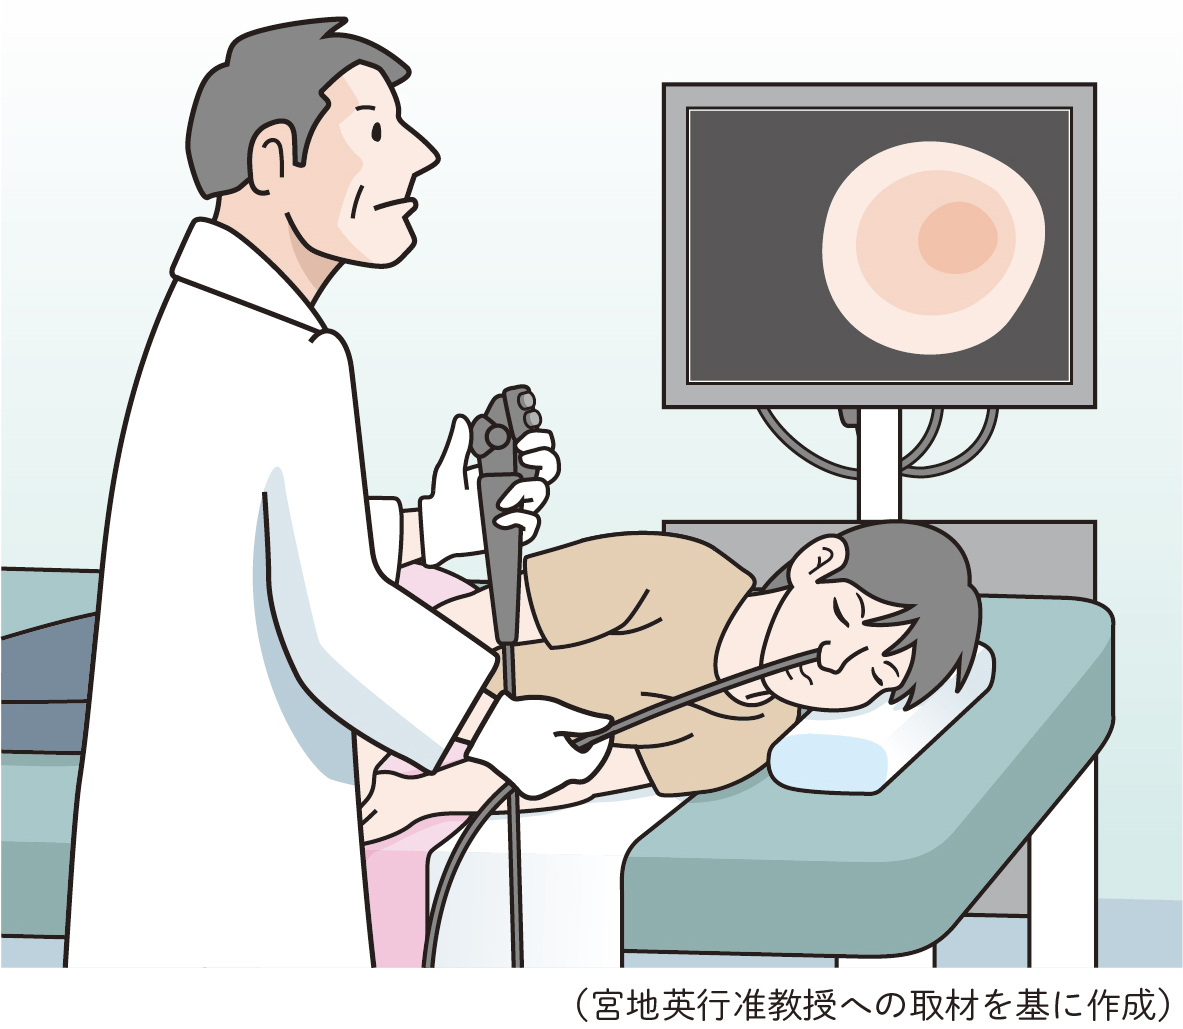 十二指腸潰瘍の診断には胃カメラなどを行う